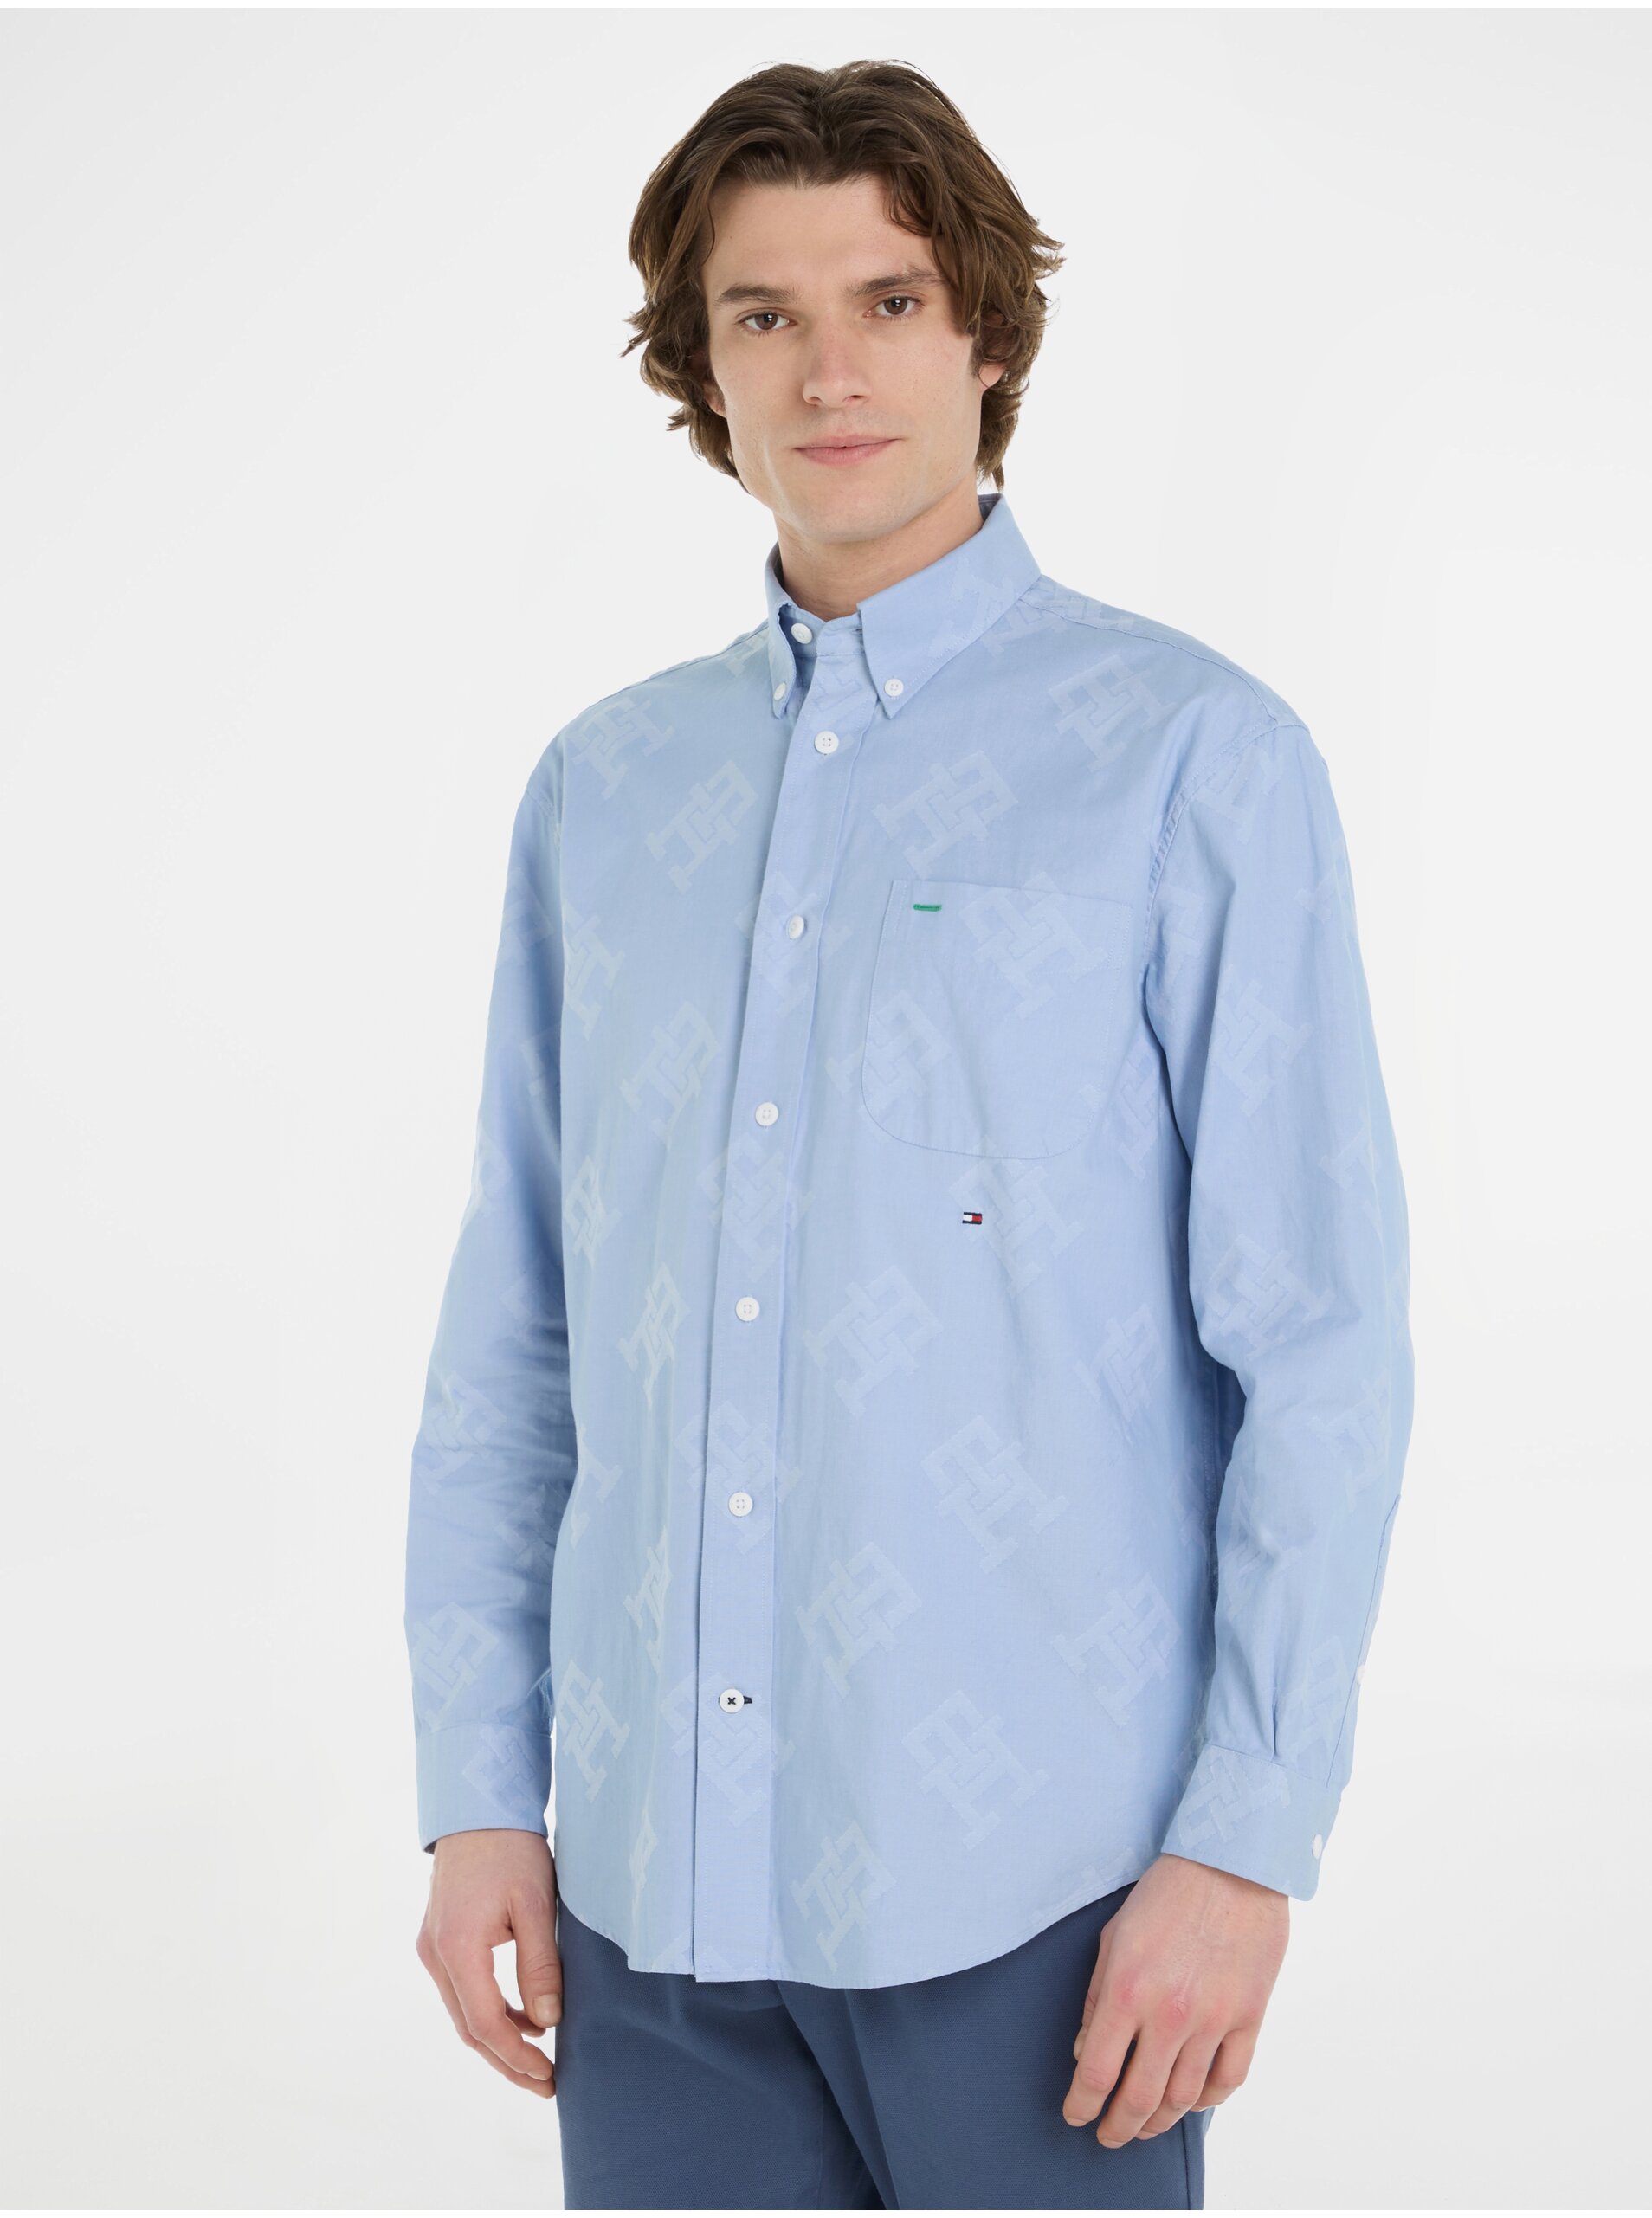 Lacno Svetlomodrá pánska vzorovaná košeľa Tommy Hilfiger Premium Oxford